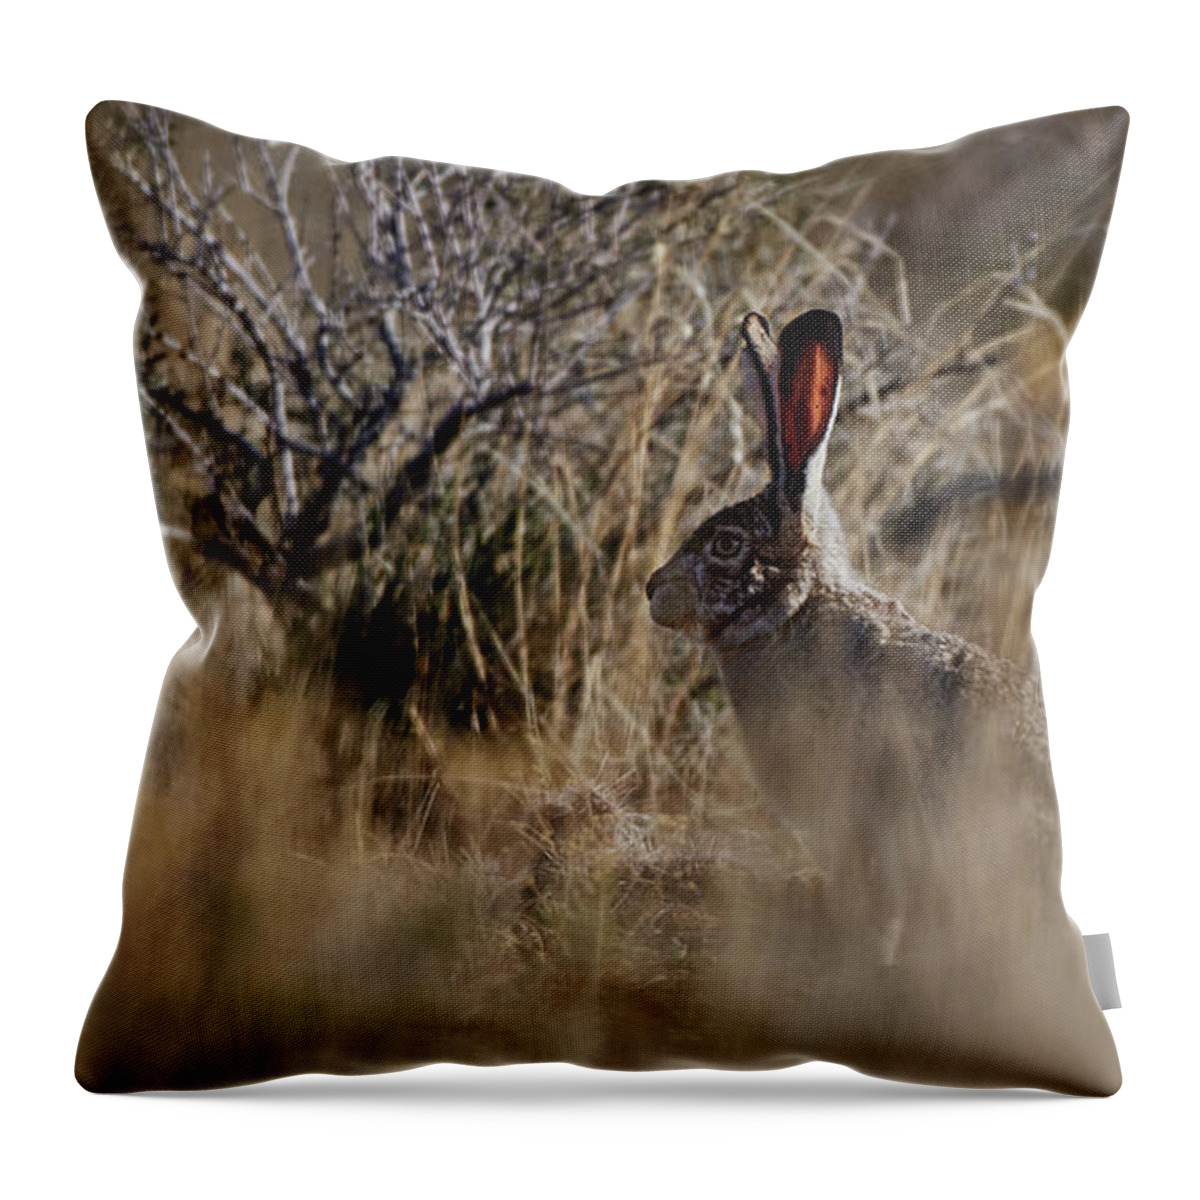 Desert Rabbit Throw Pillow featuring the photograph Desert Rabbit by Robert WK Clark